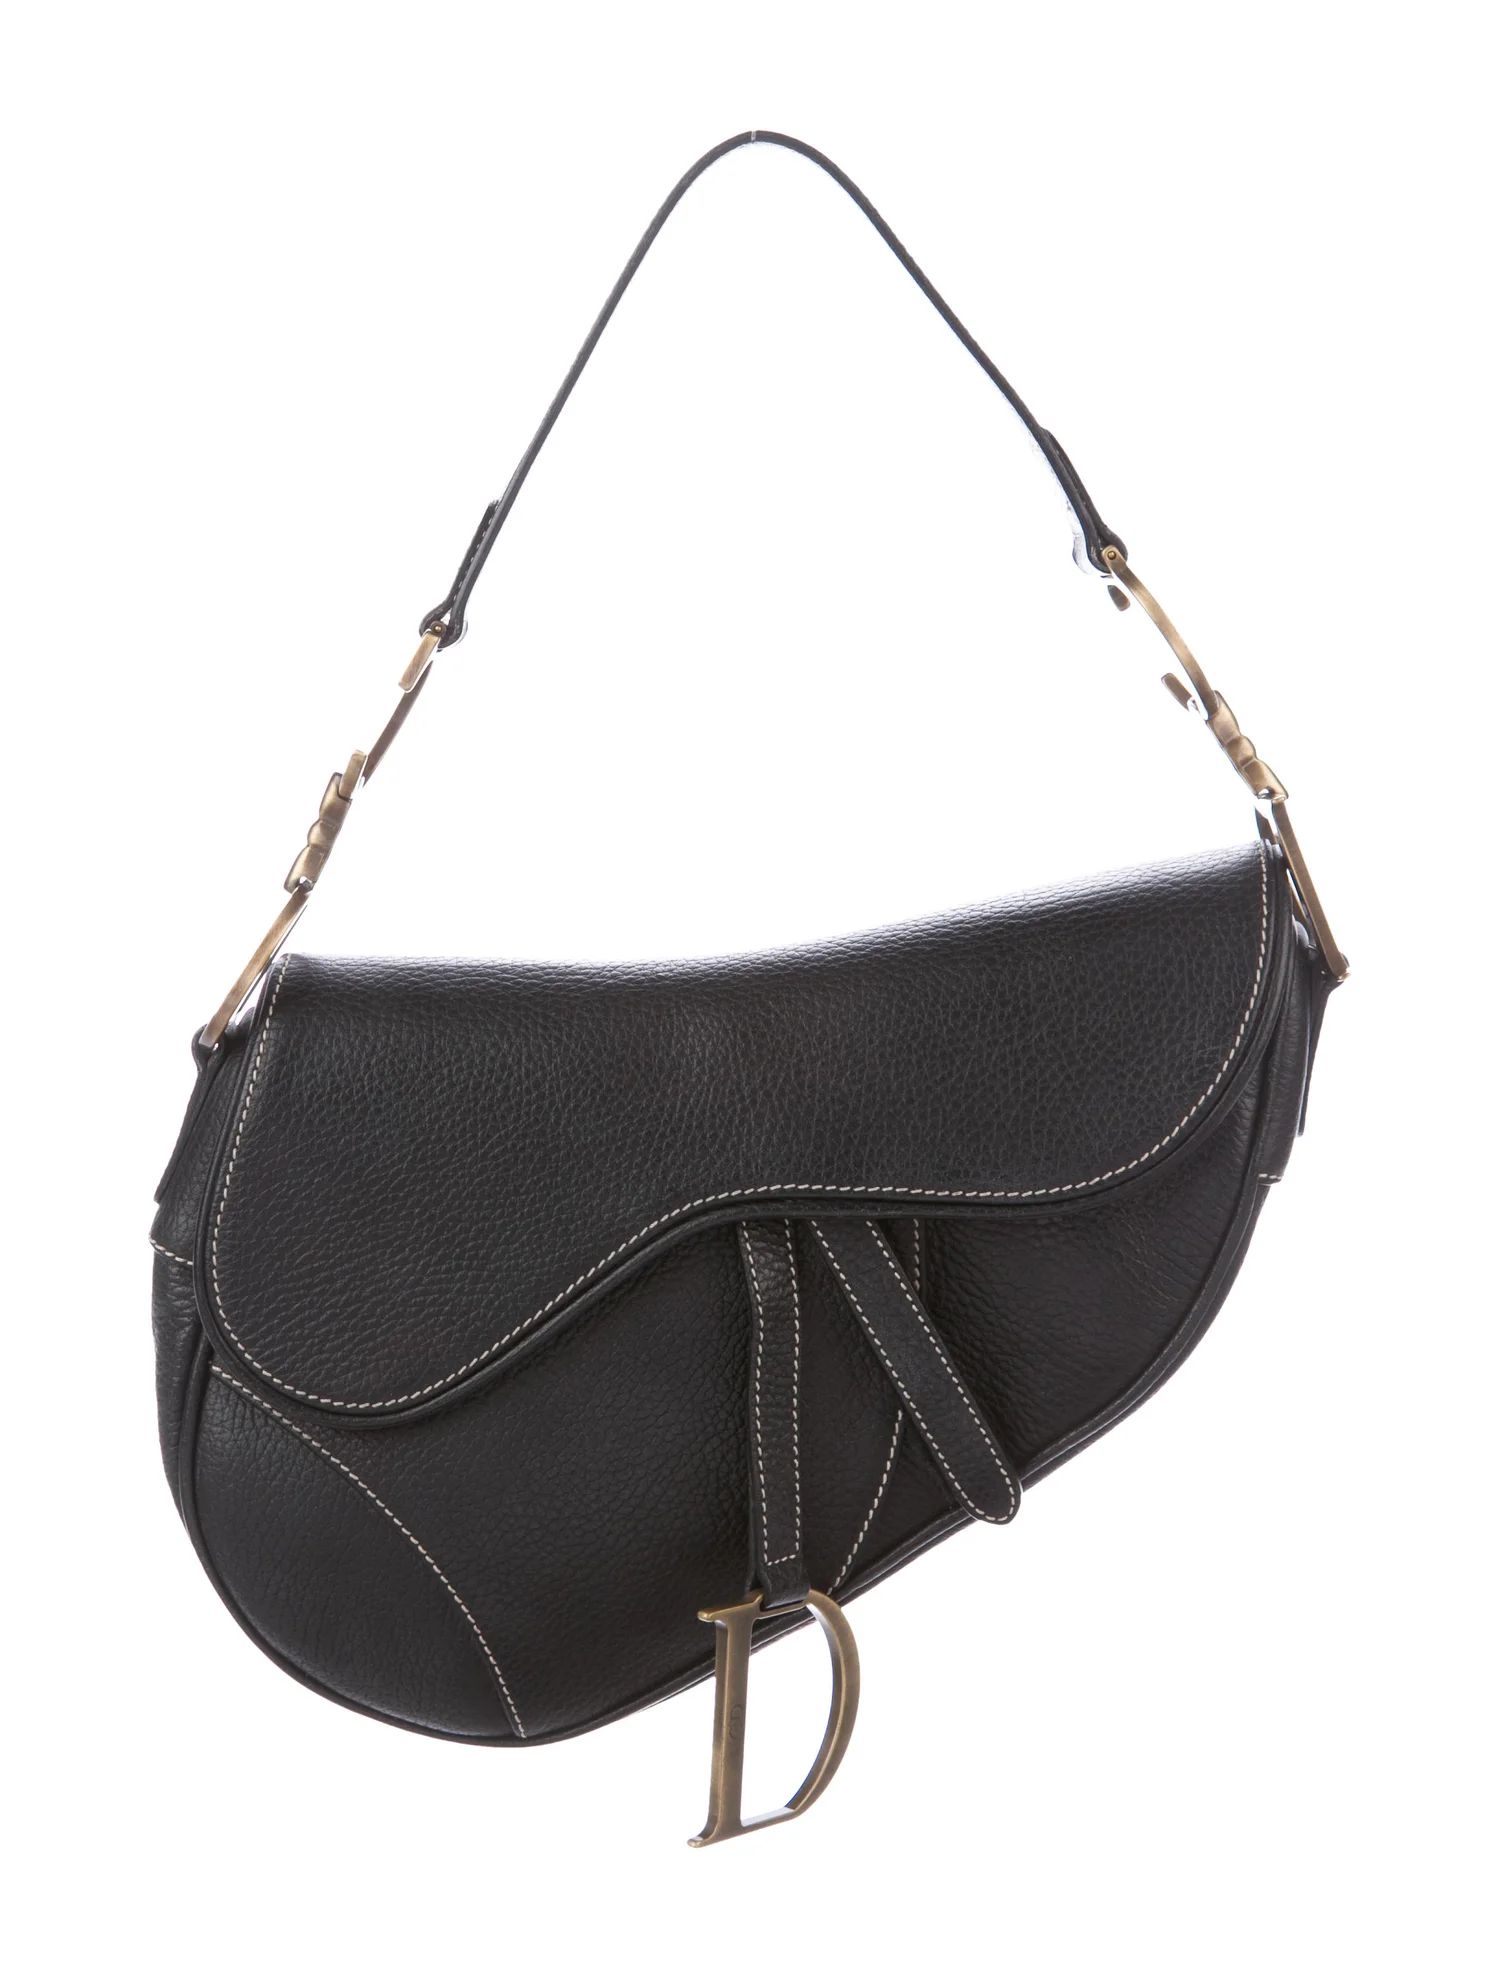 Vintage Leather Saddle Bag | The RealReal